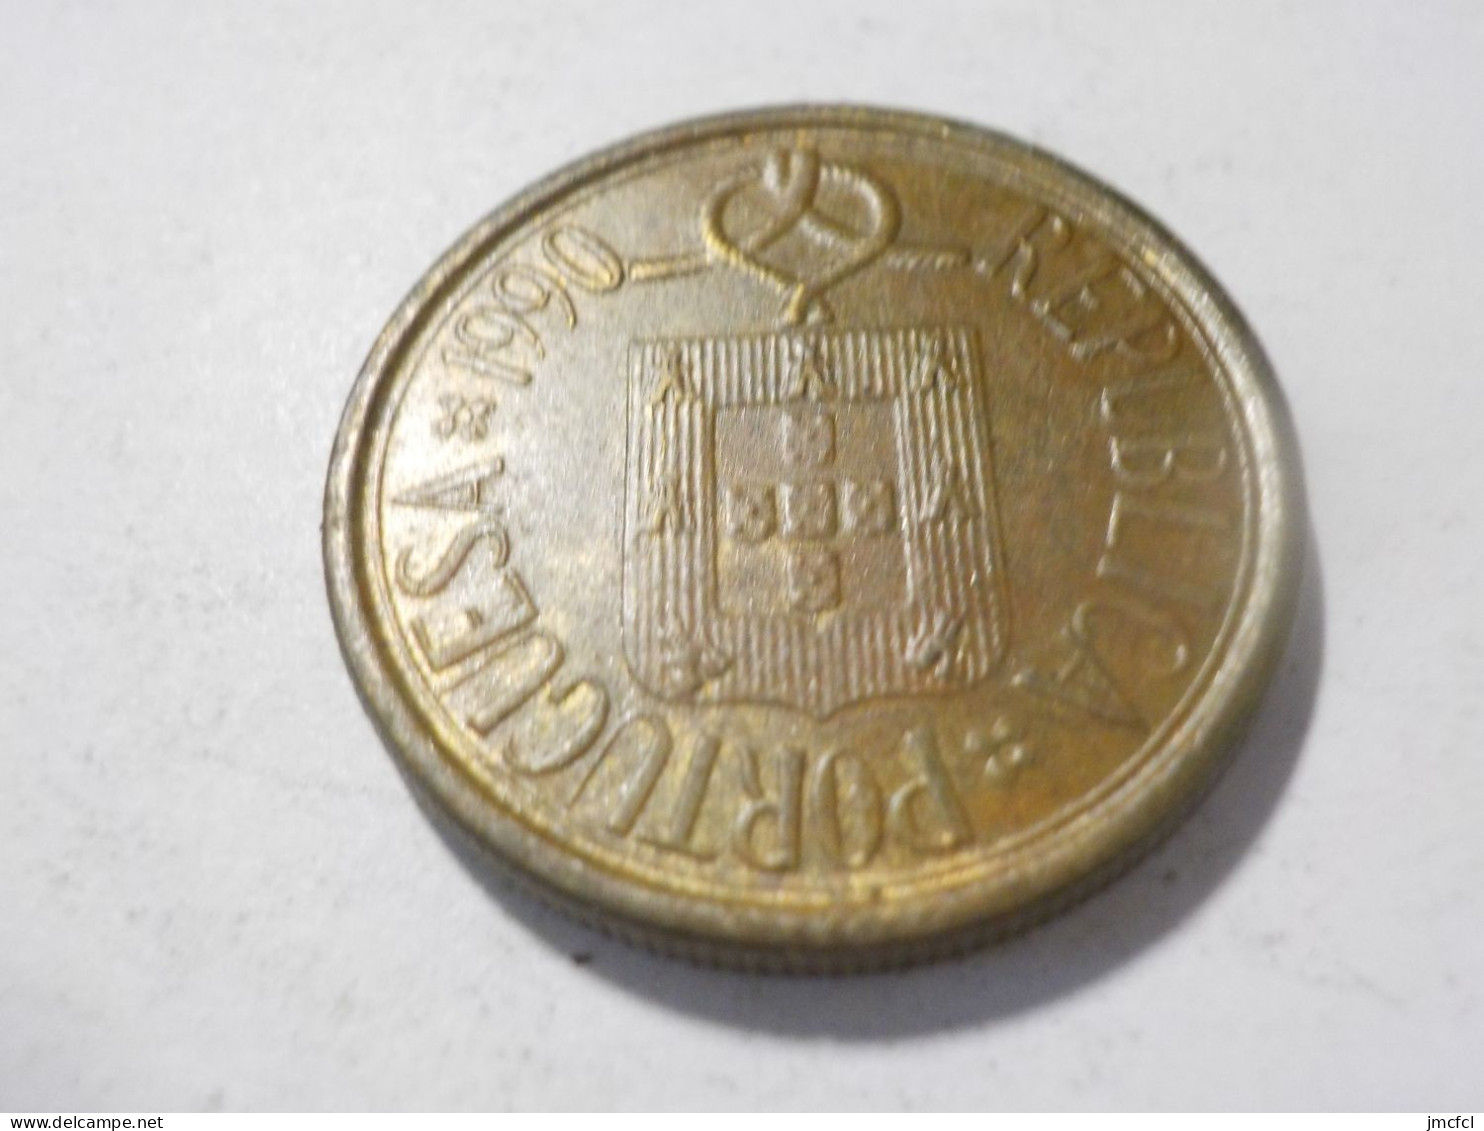 PORTUGAL 1990   5 Escudos - Portogallo